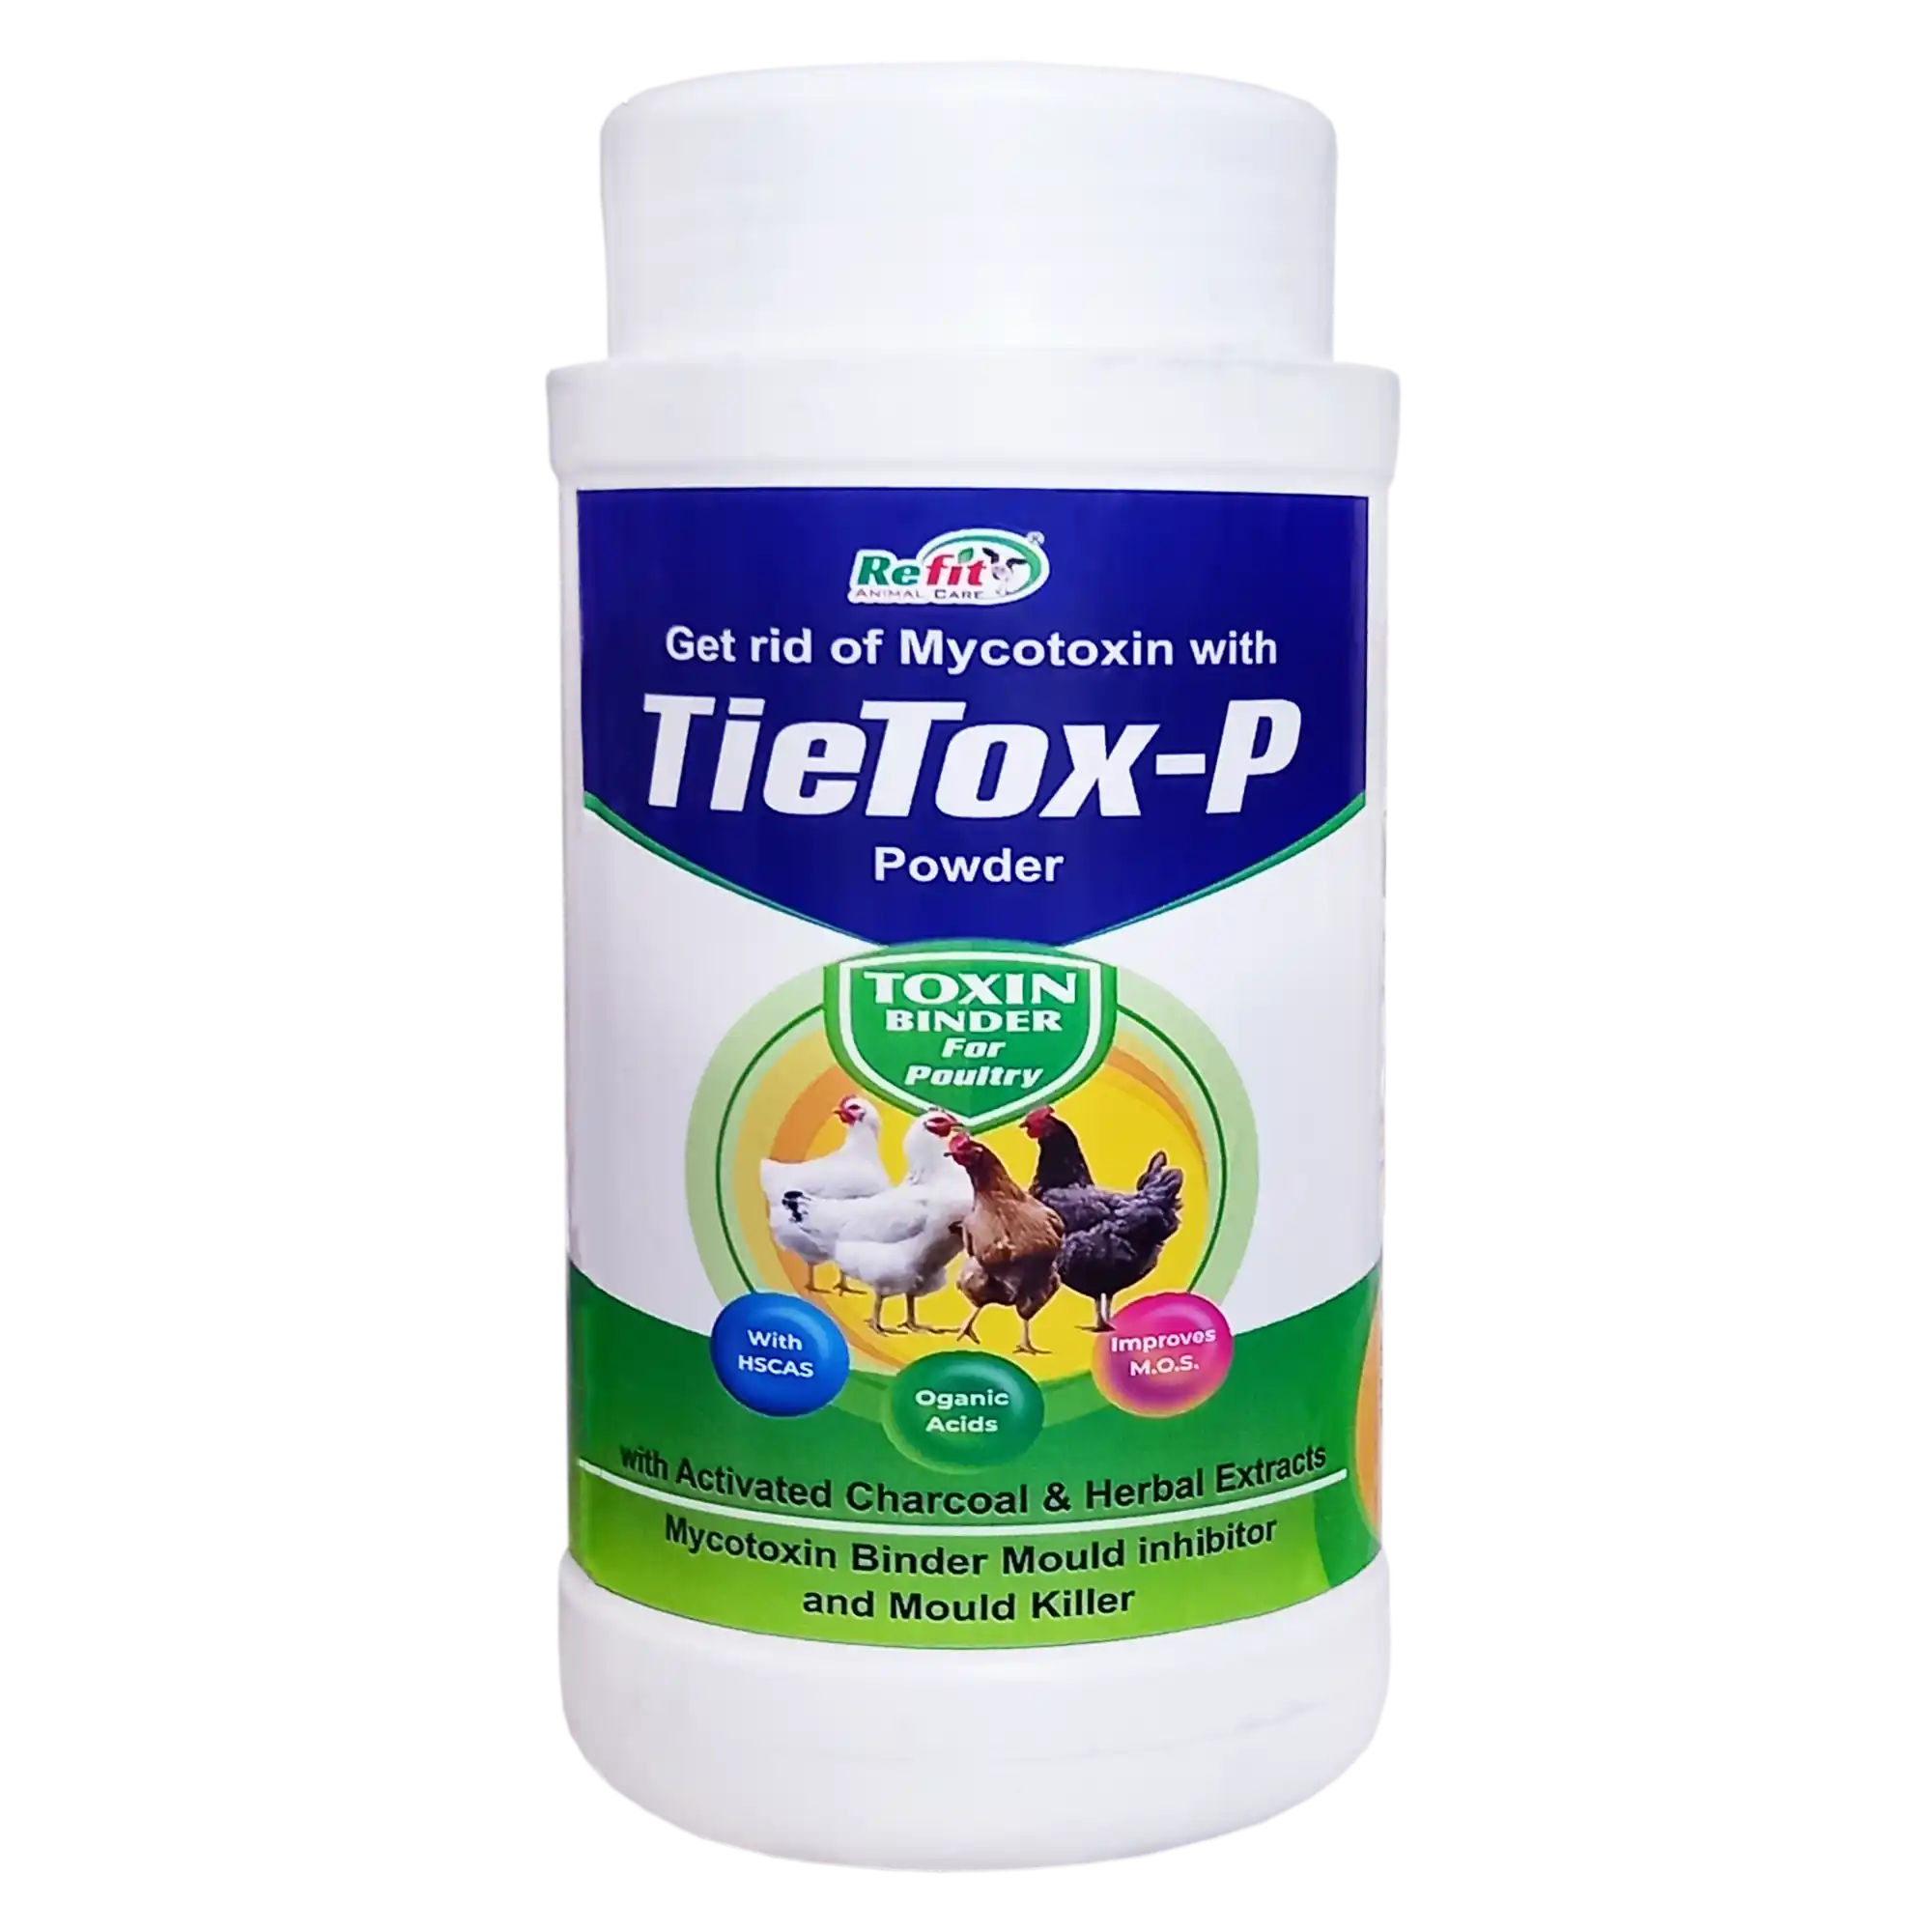 Toxin Binder Powder Tietox p